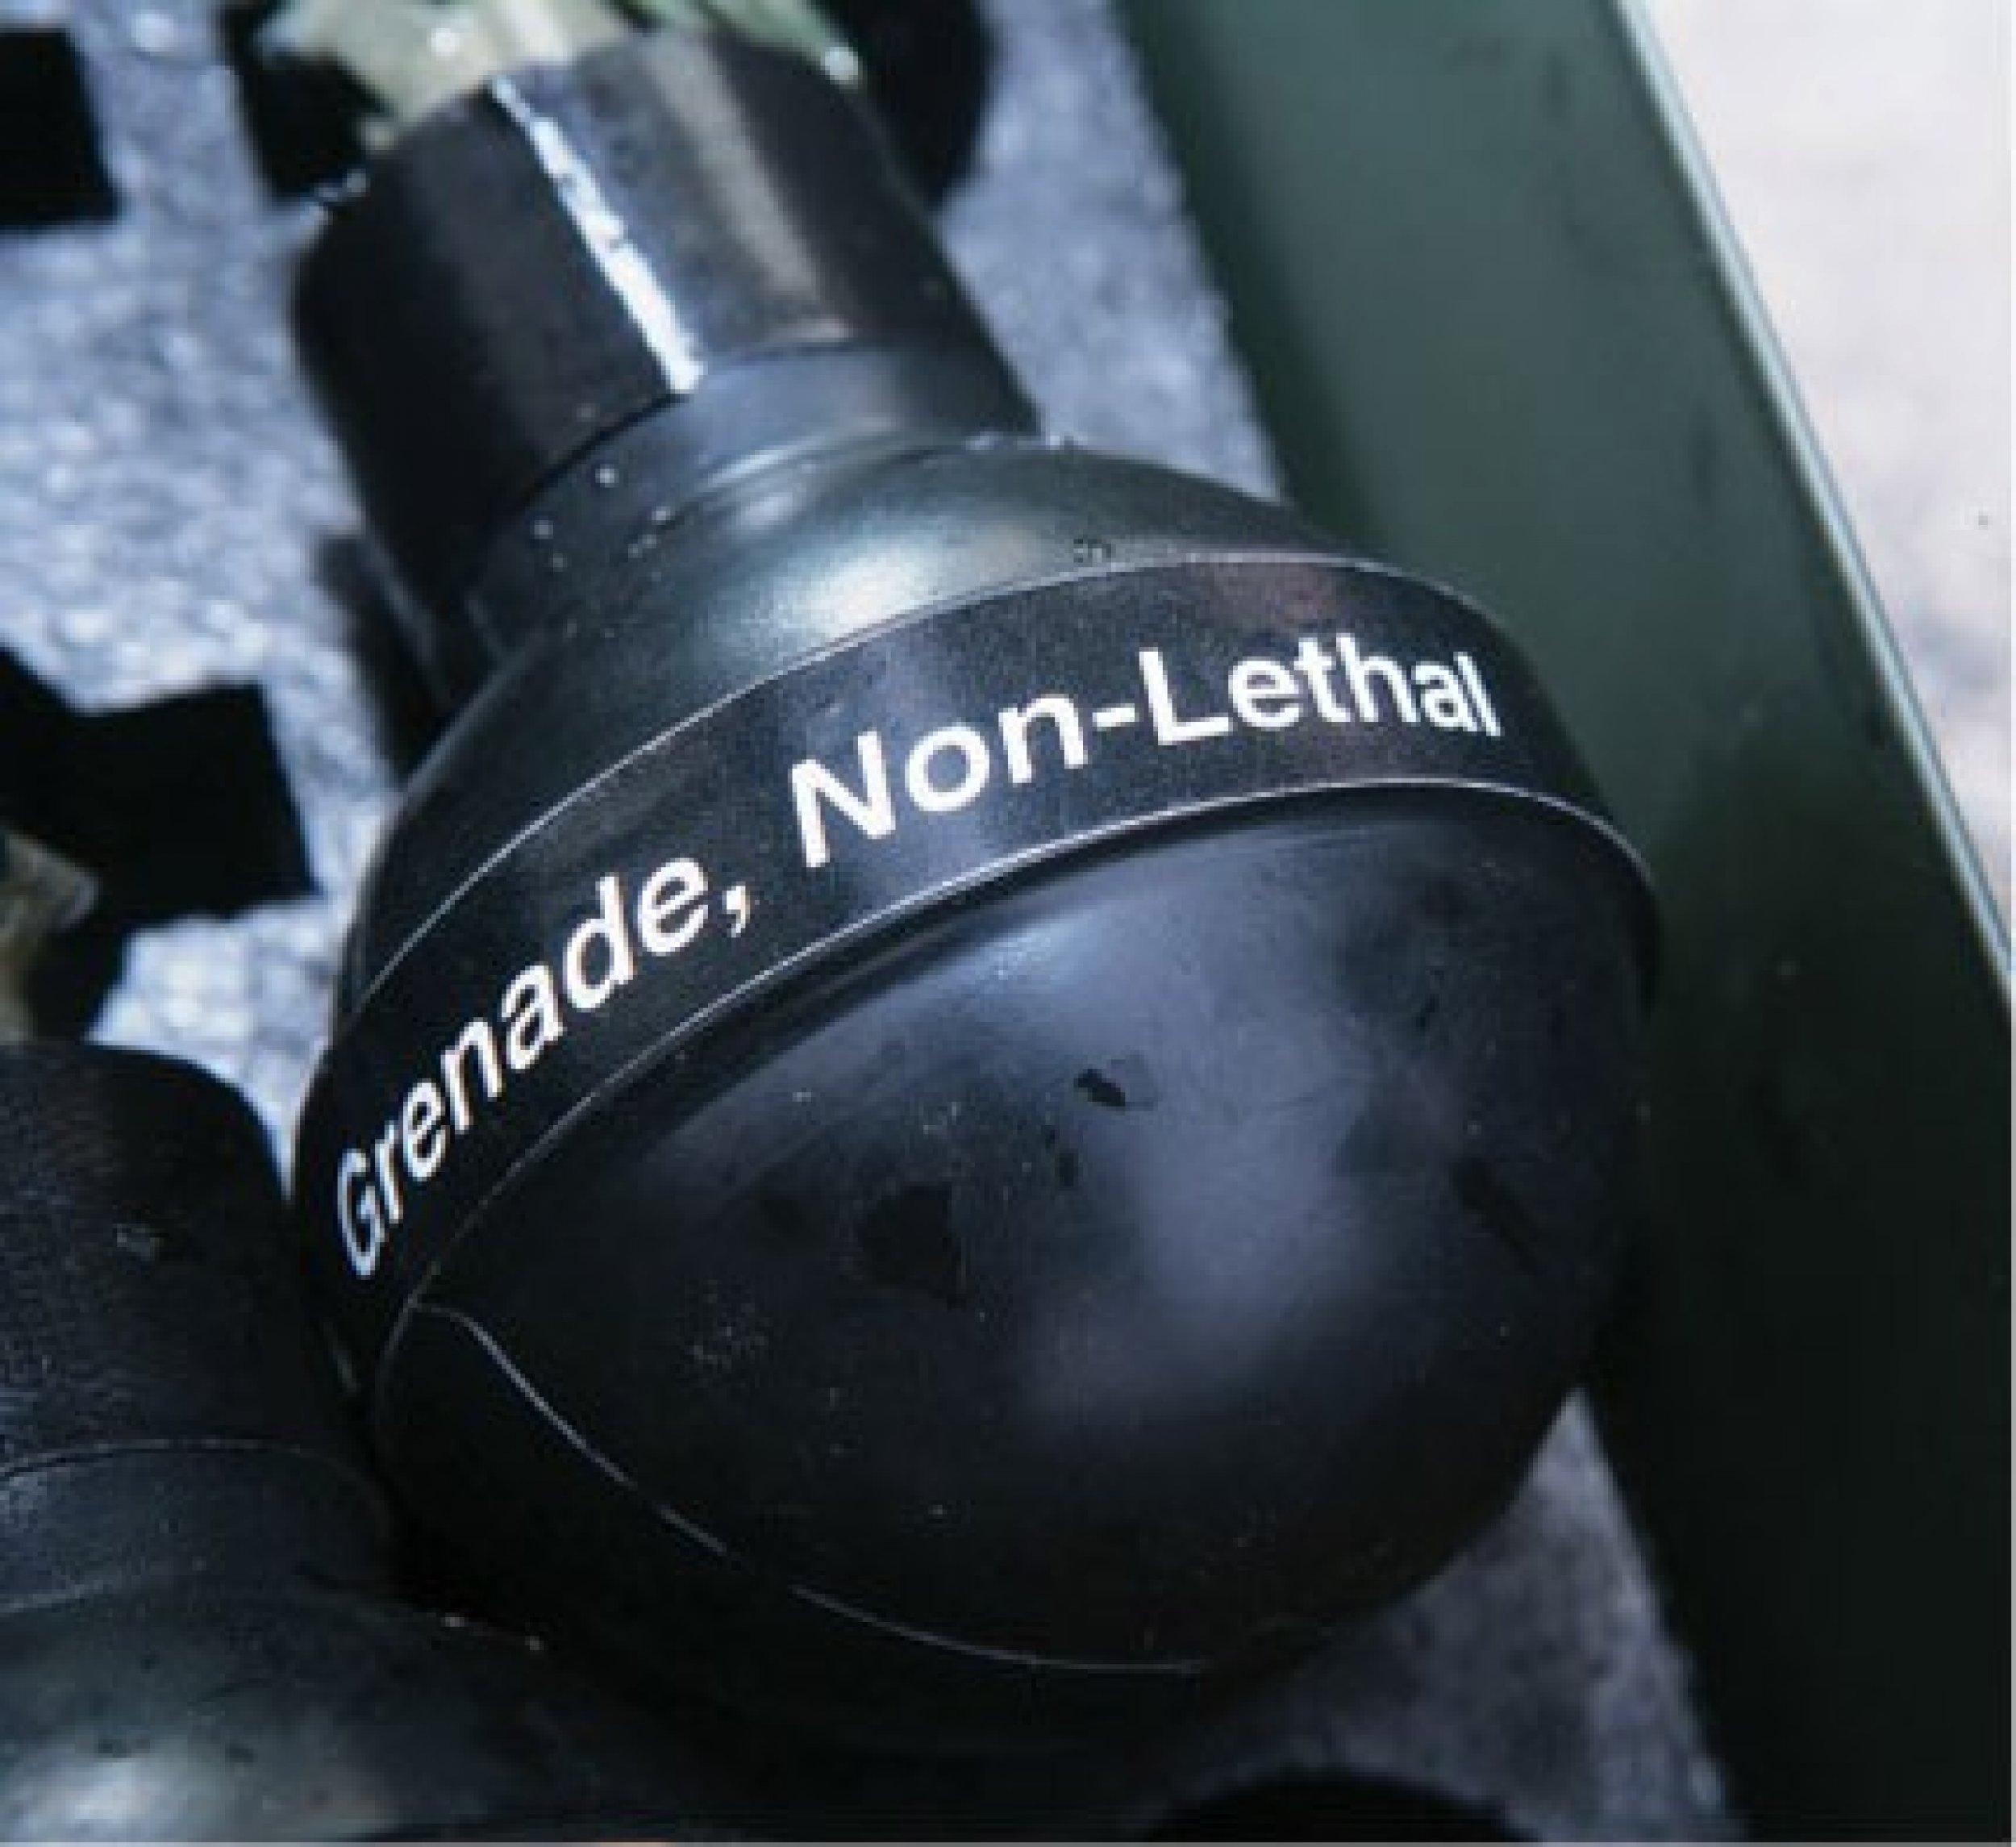 A stingball grenade